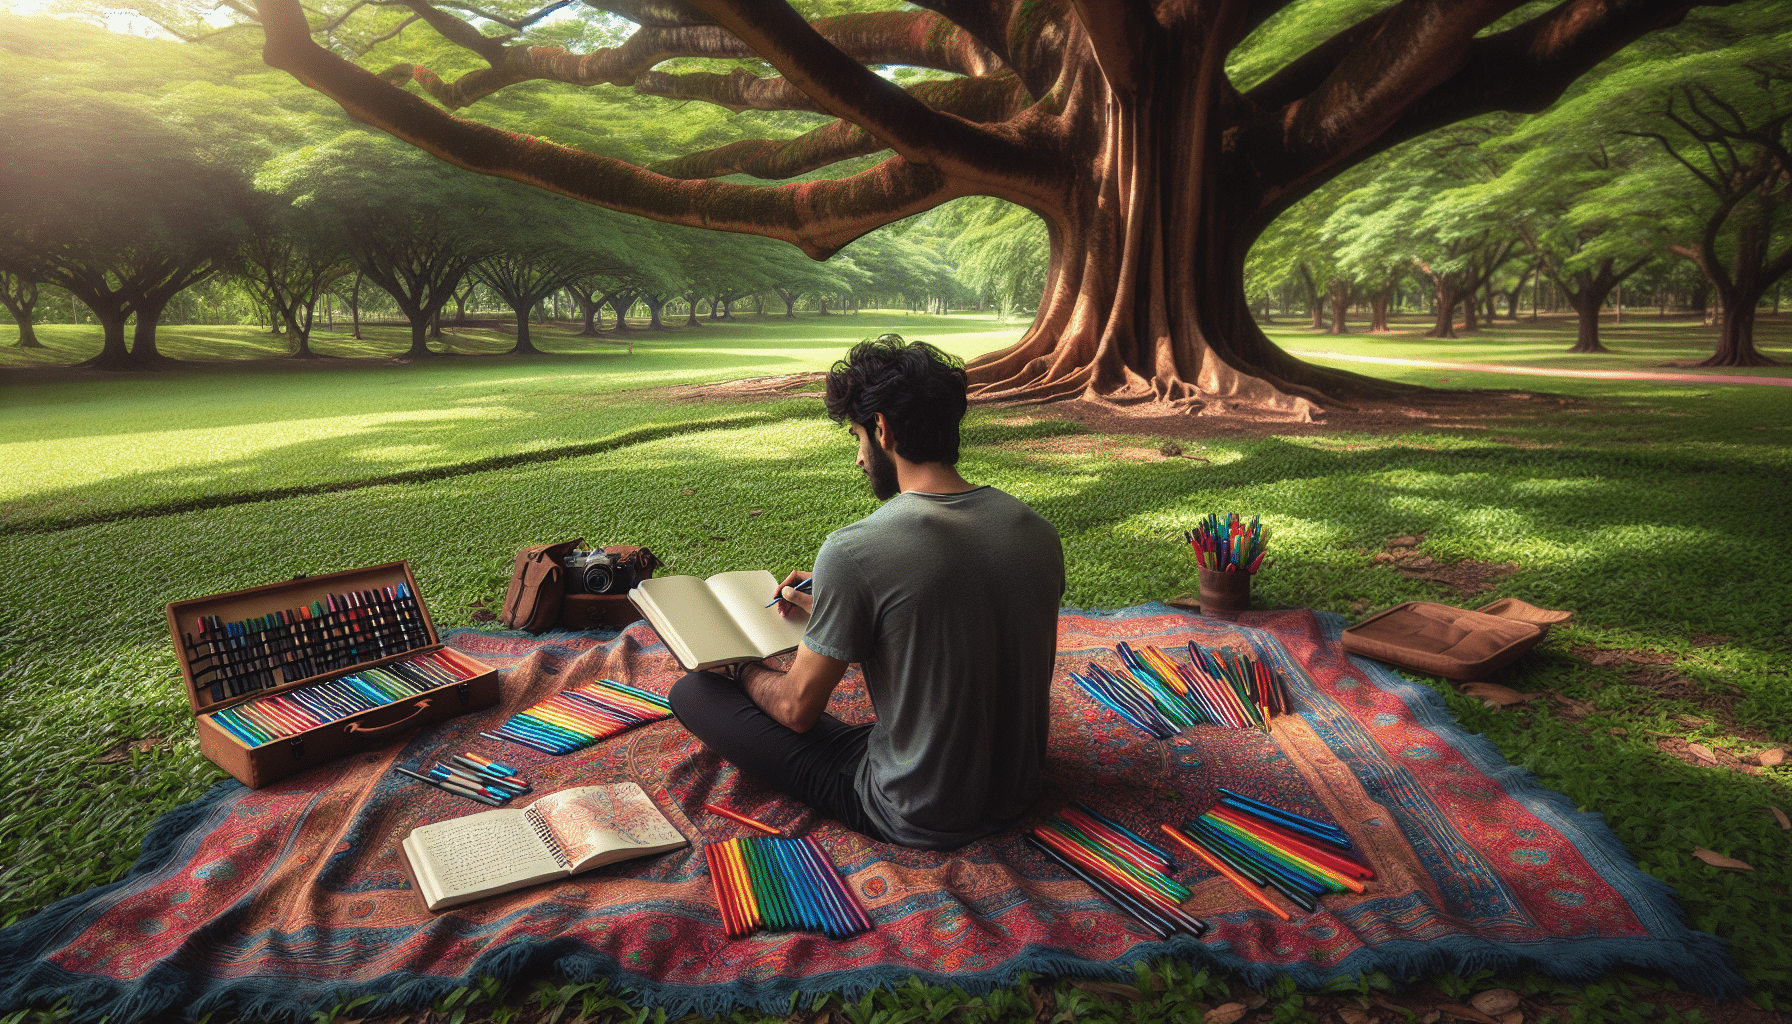 Jong individueel journaling in een serene parkomgeving.